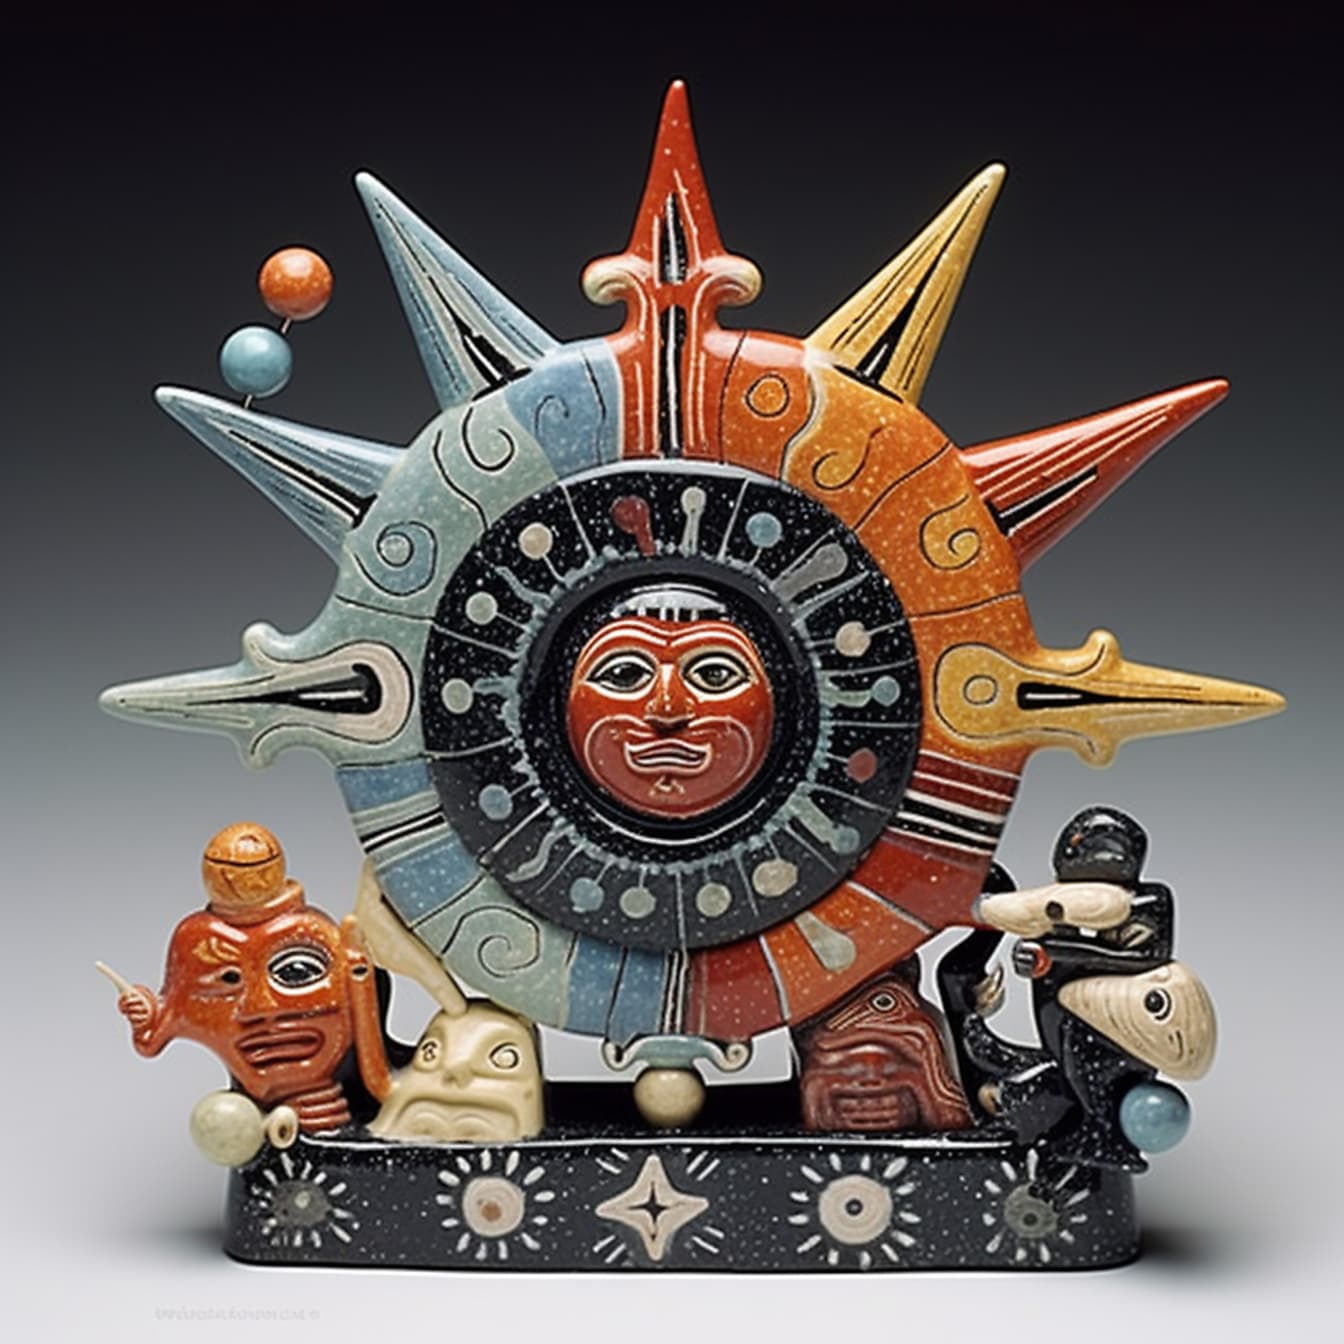 Patung keramik berwarna-warni simbol Aztec Bintang matahari